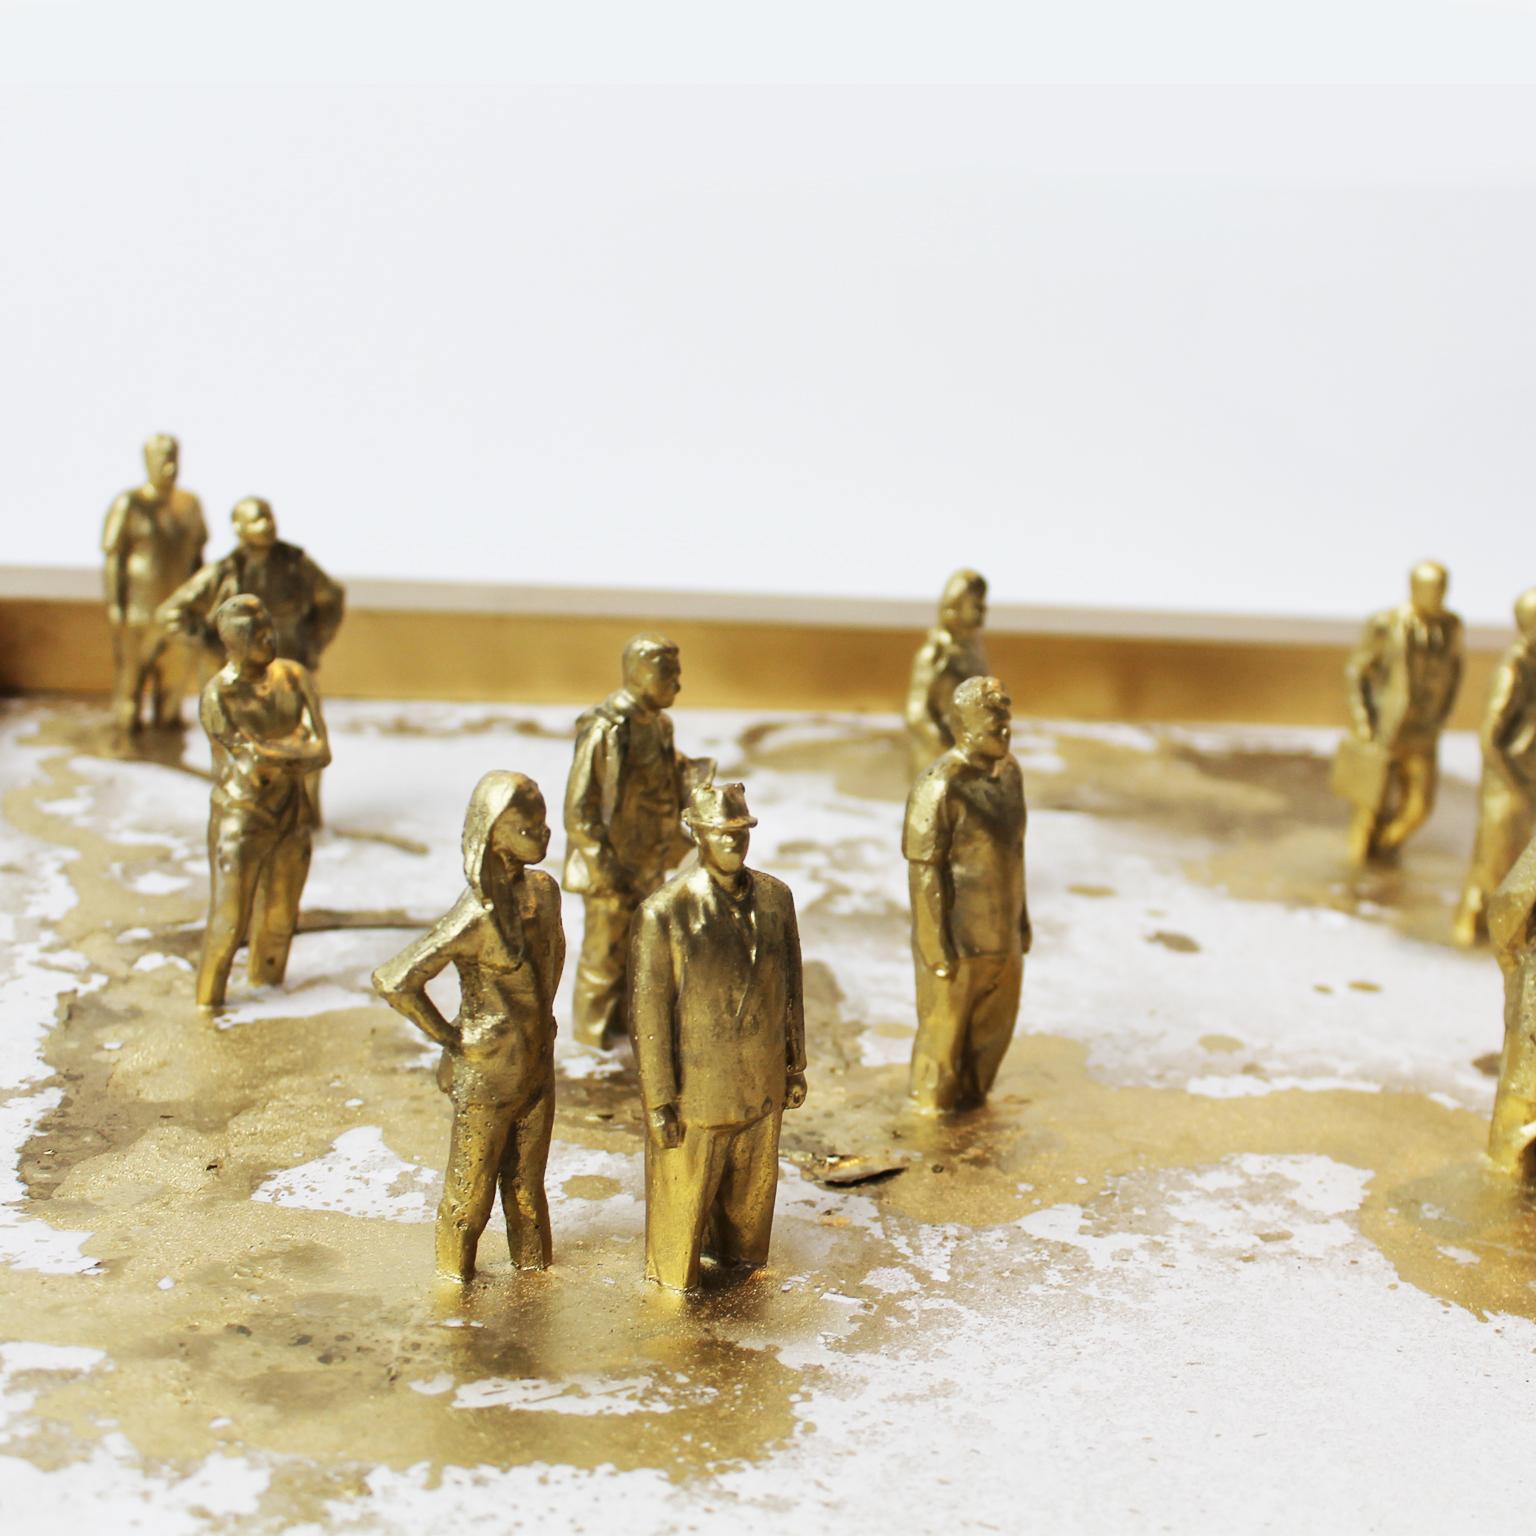 Golden Human Sparks - Contemporary Sculpture by Arozarena De La Fuente